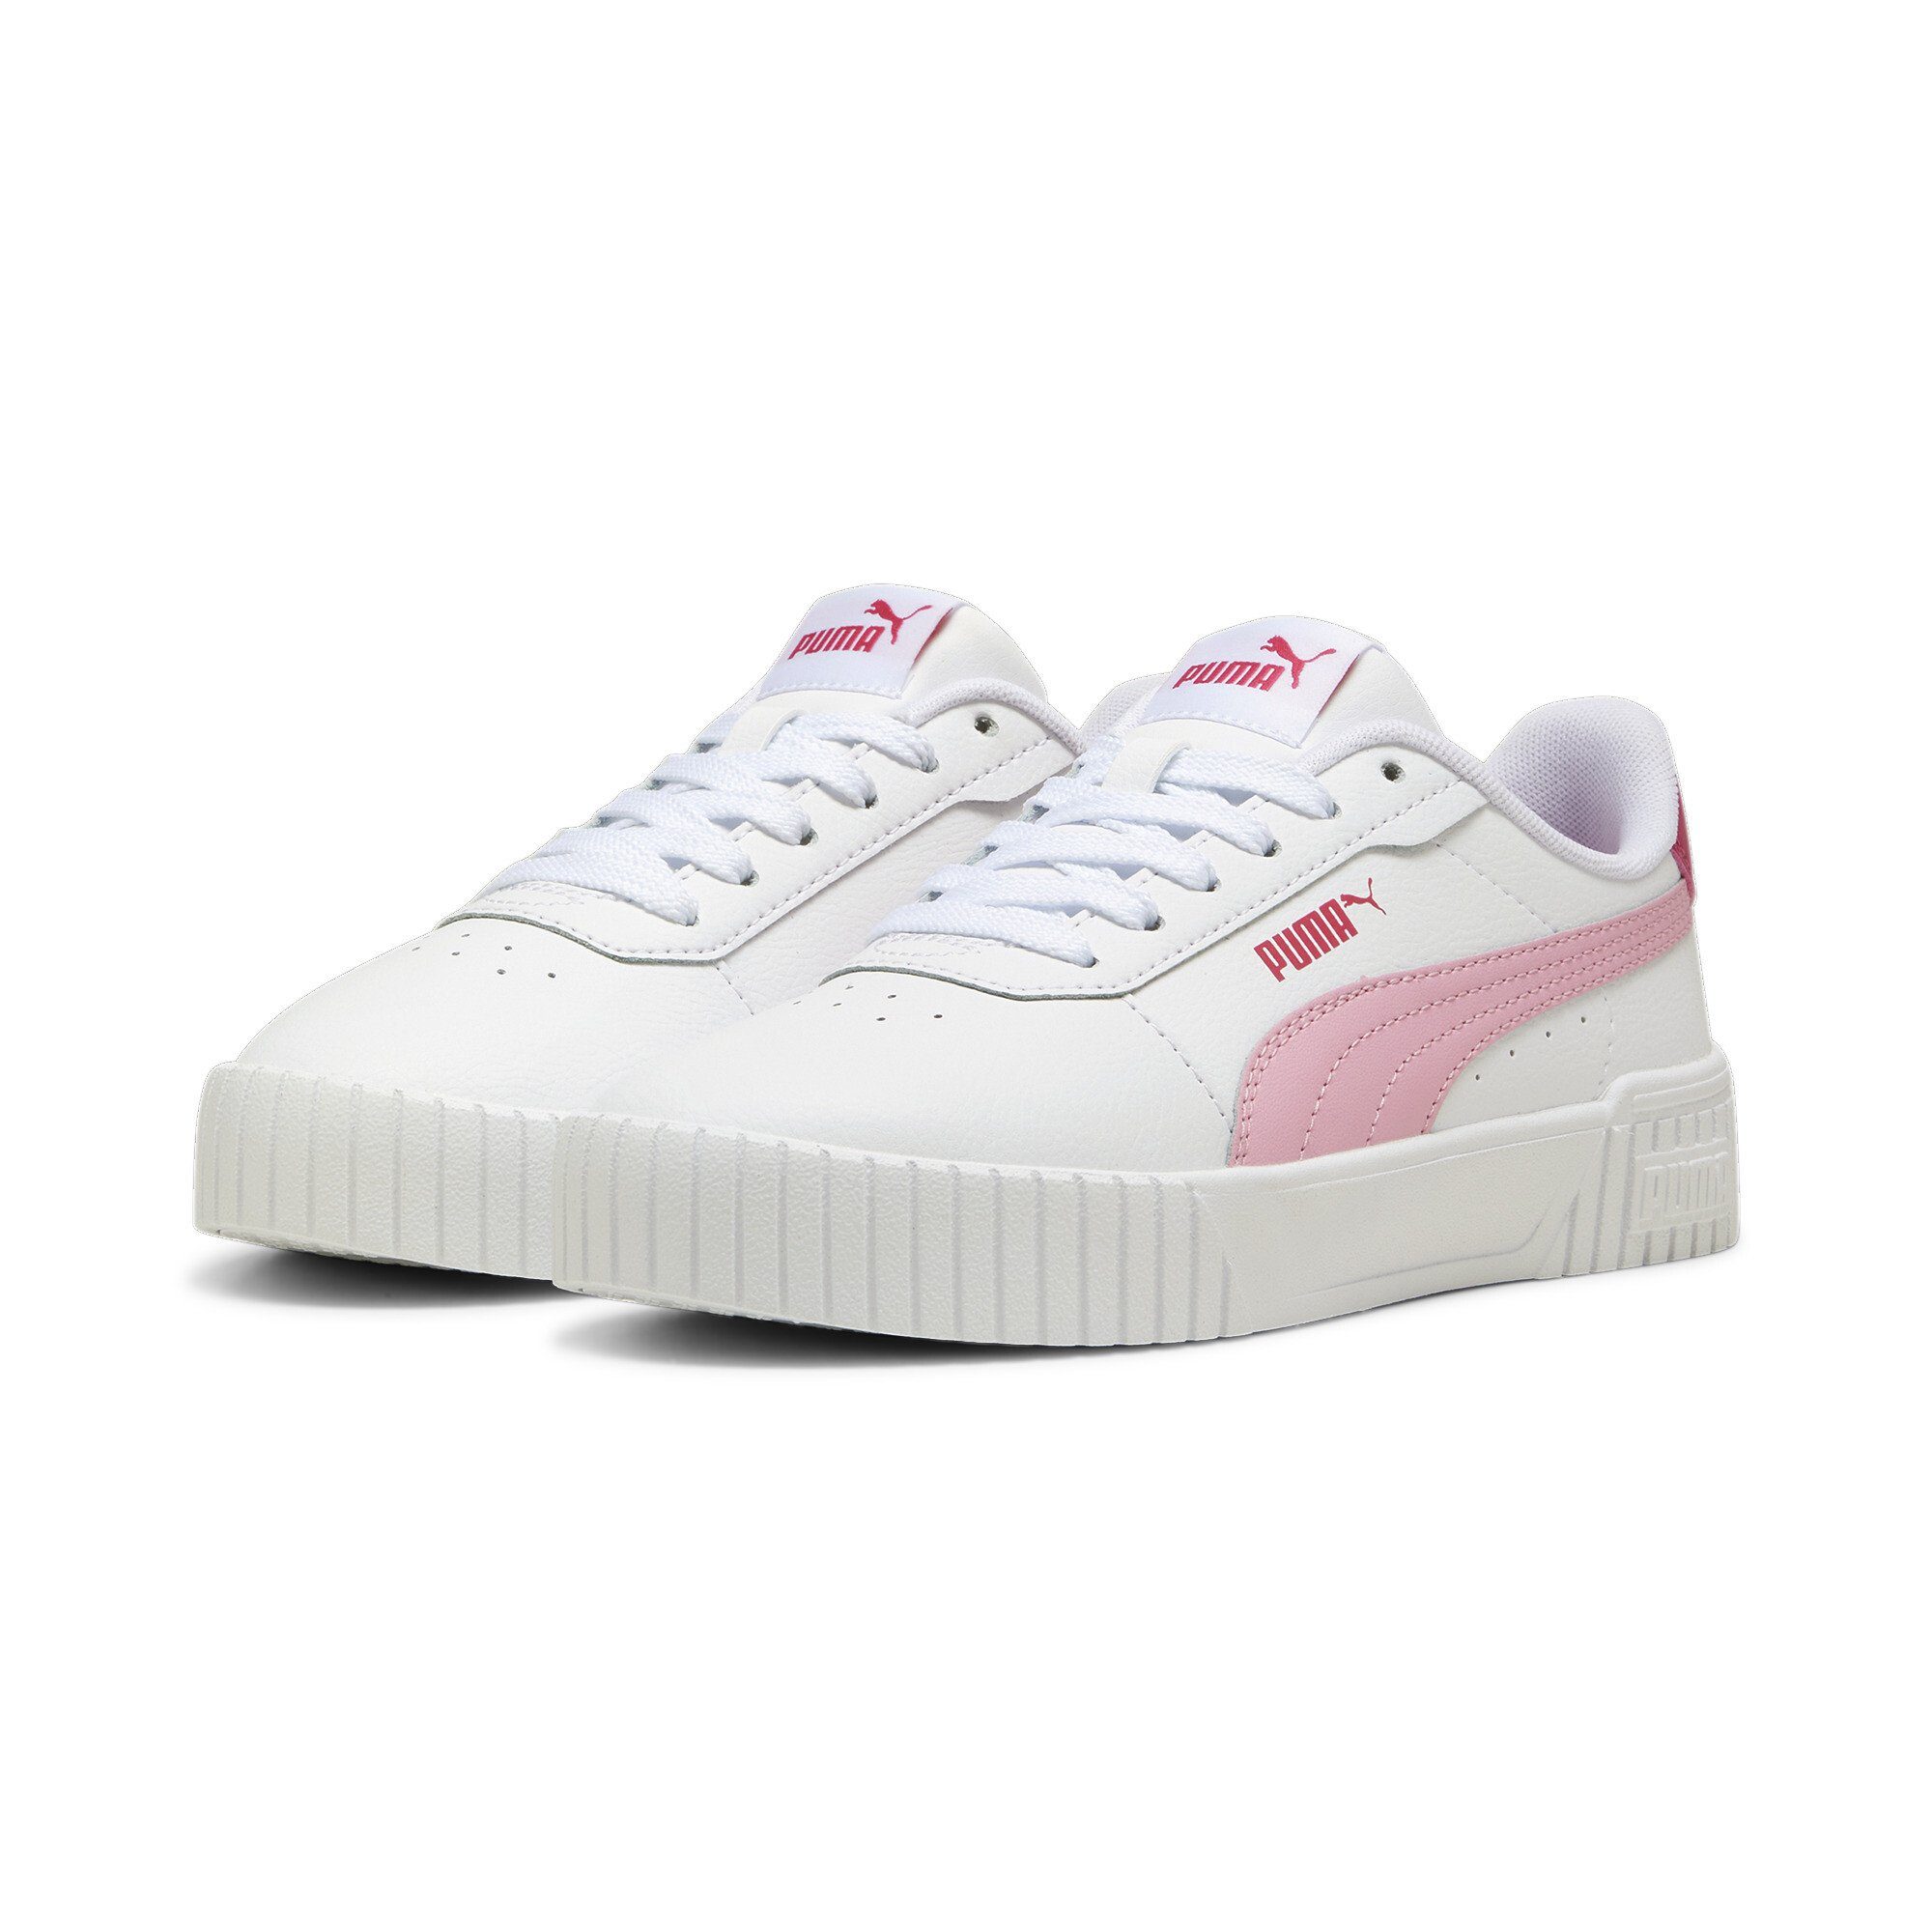 2.0 PUMA Sneaker Jugendliche Lilac Carina Pink White Sneakers